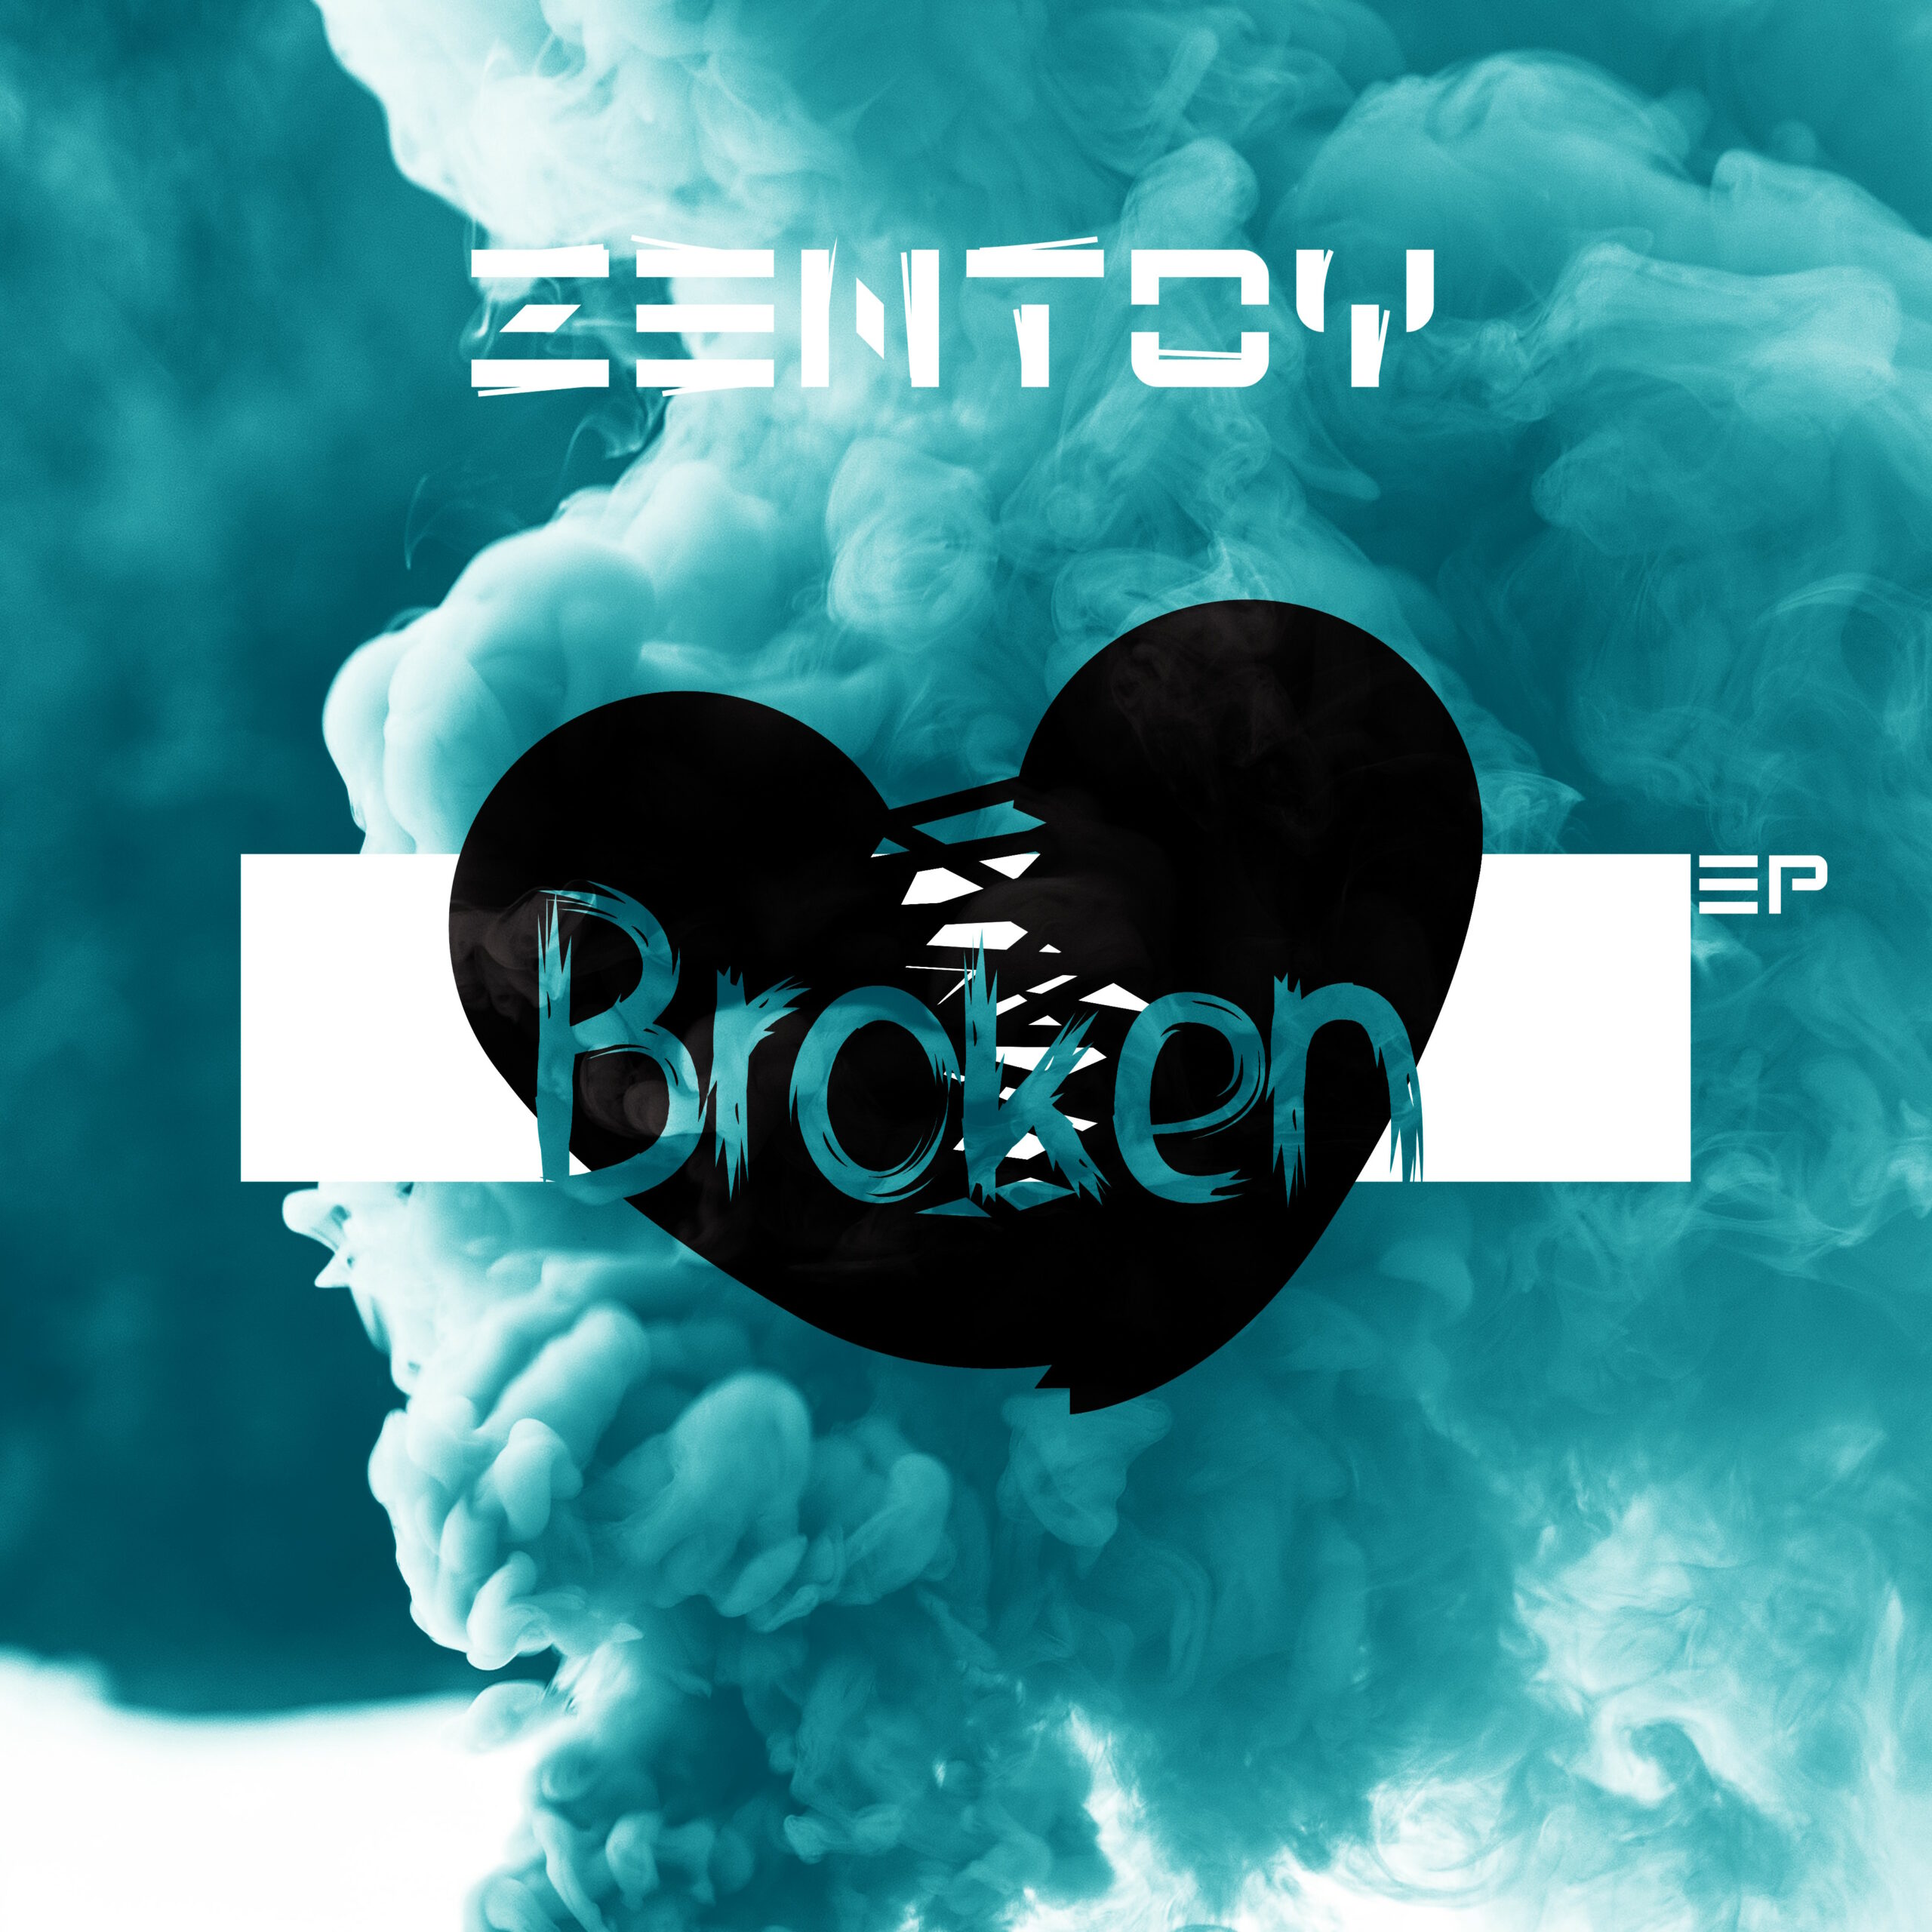 ZenToy - Broken